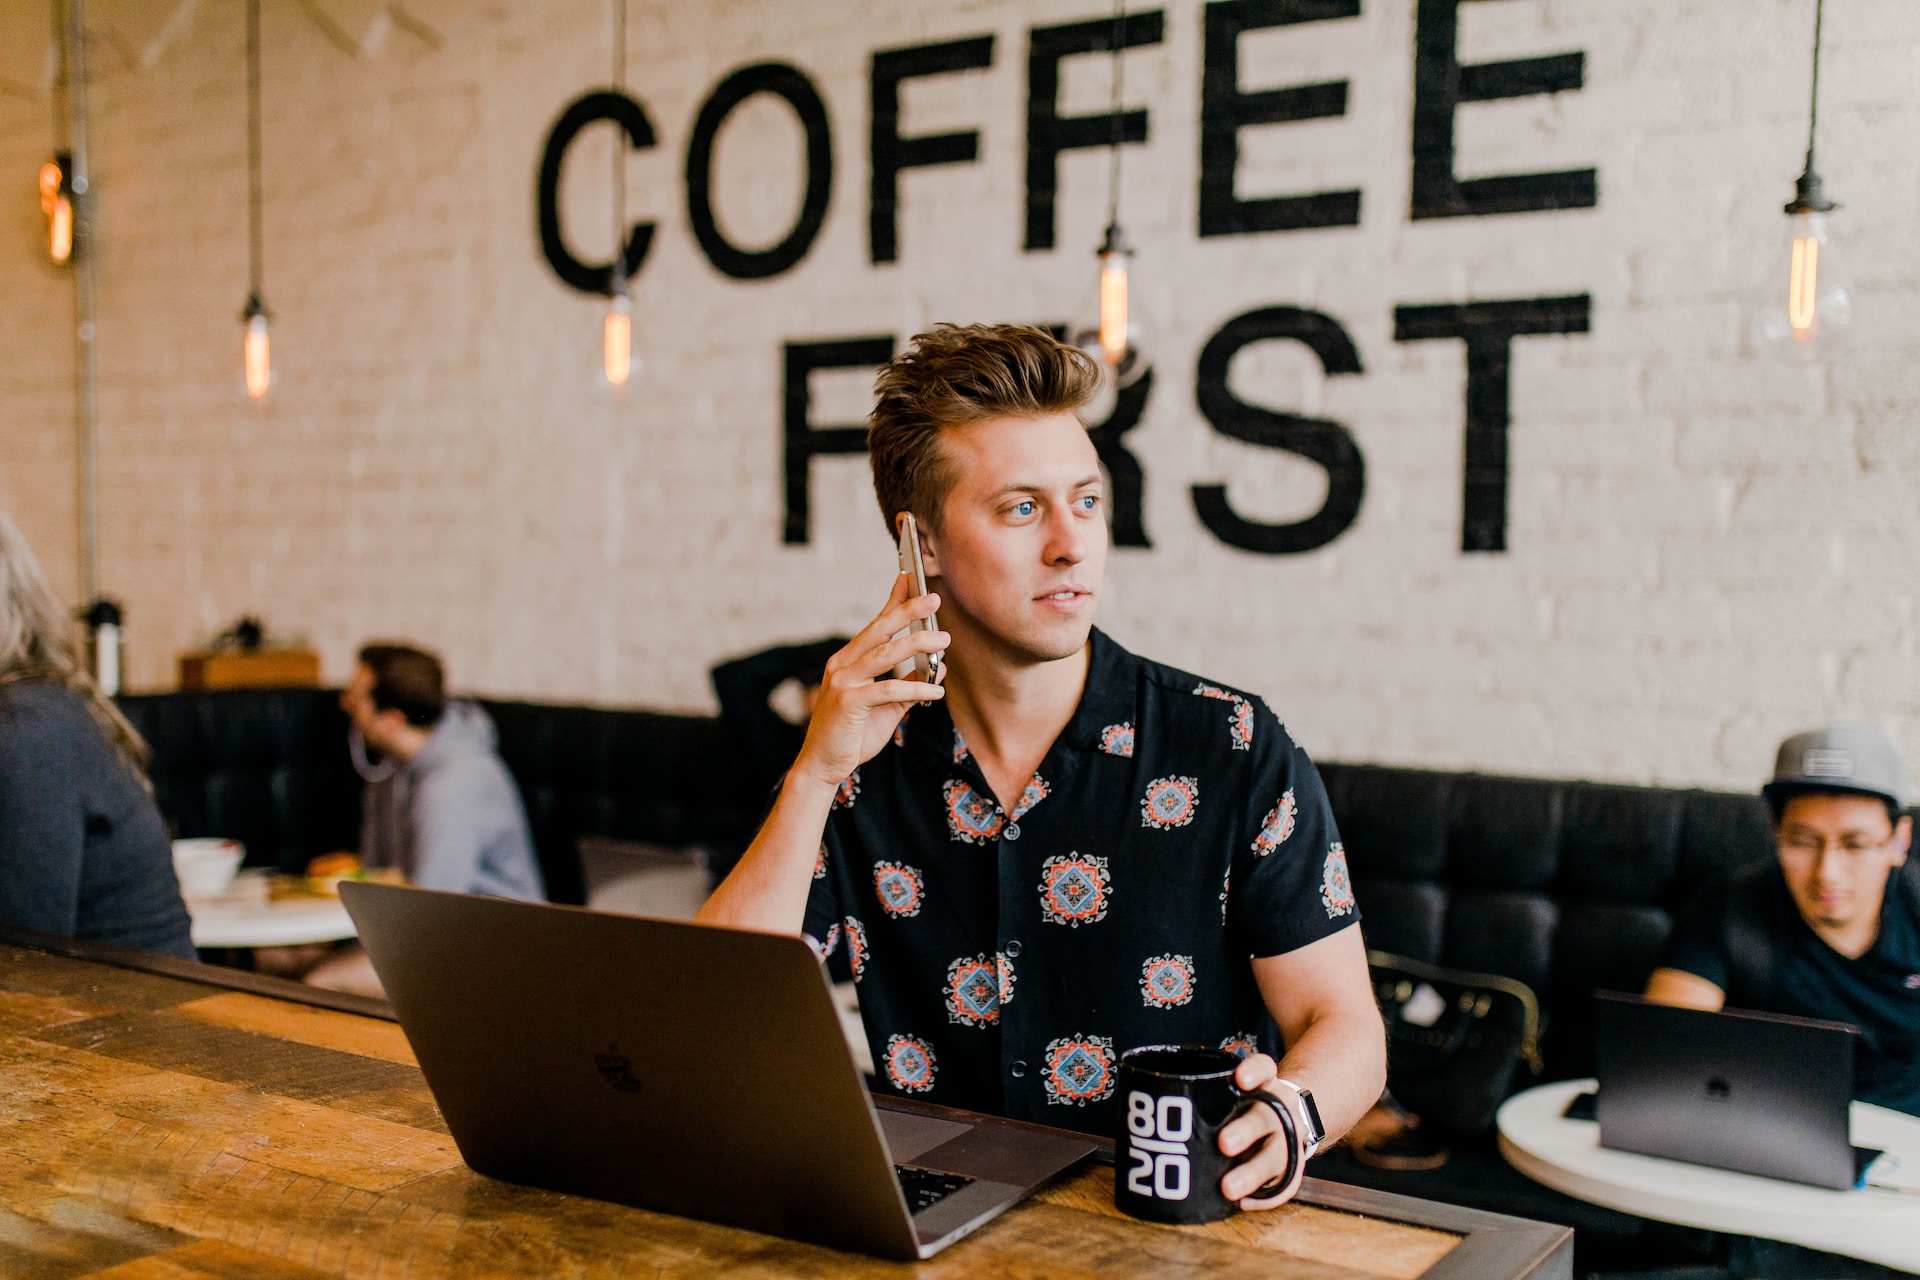 Stockfoto eines jungen Start-up-Gründers mit PC und Smartphone und einem Kaffee